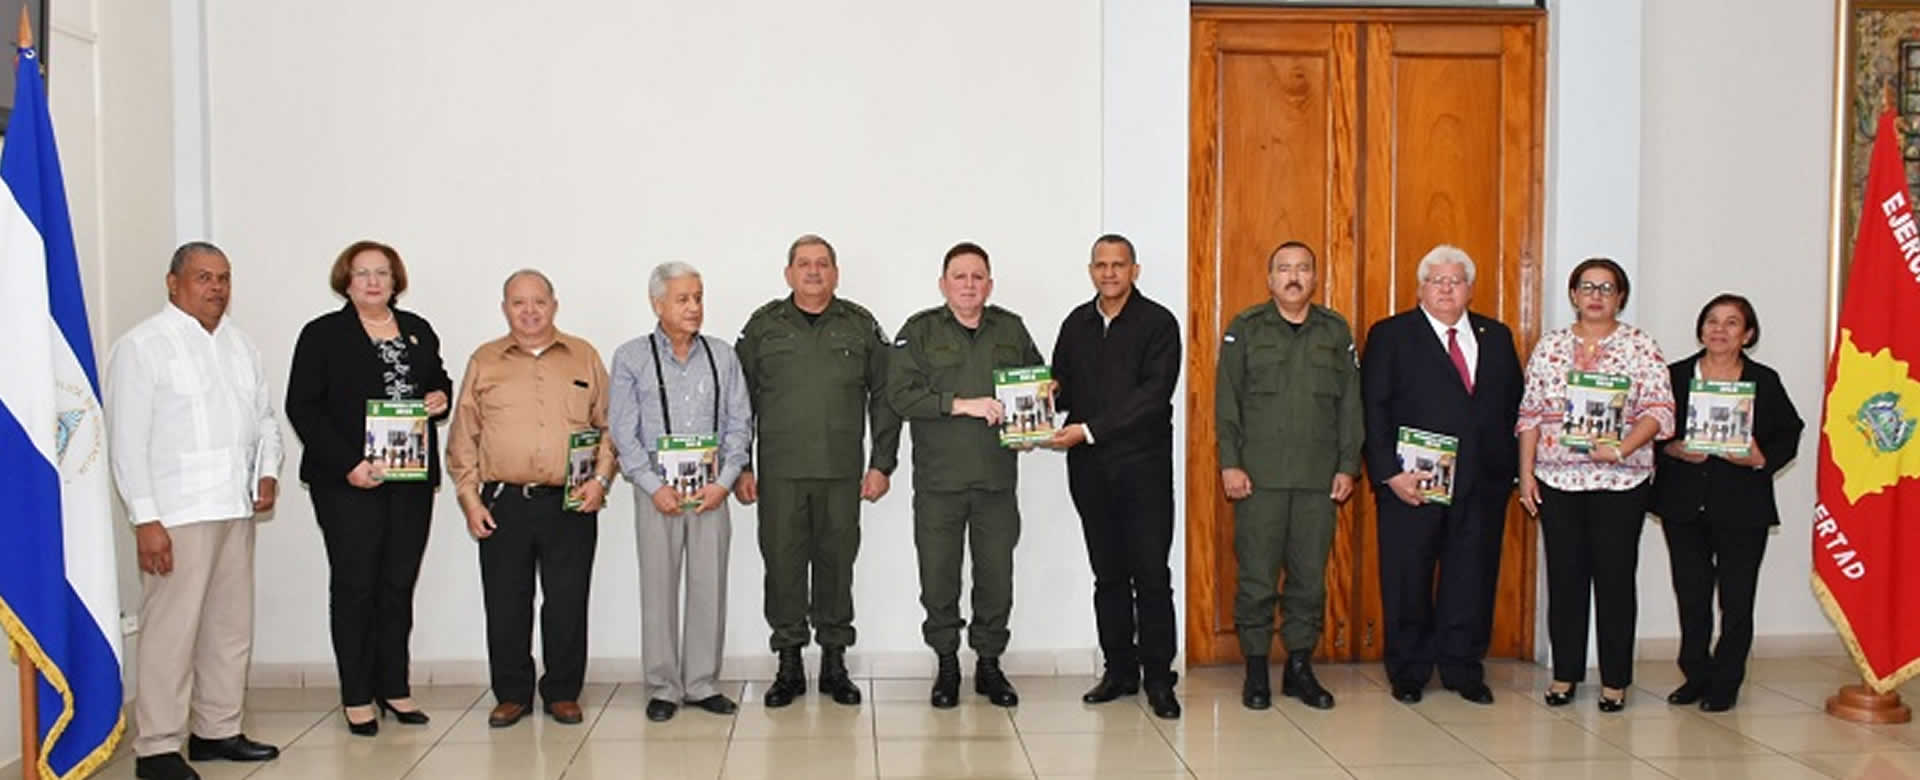 Ejército de Nicaragua entrega Memoria Anual 2018 a Vicepresidente y Magistrados del Consejo Supremo Electoral